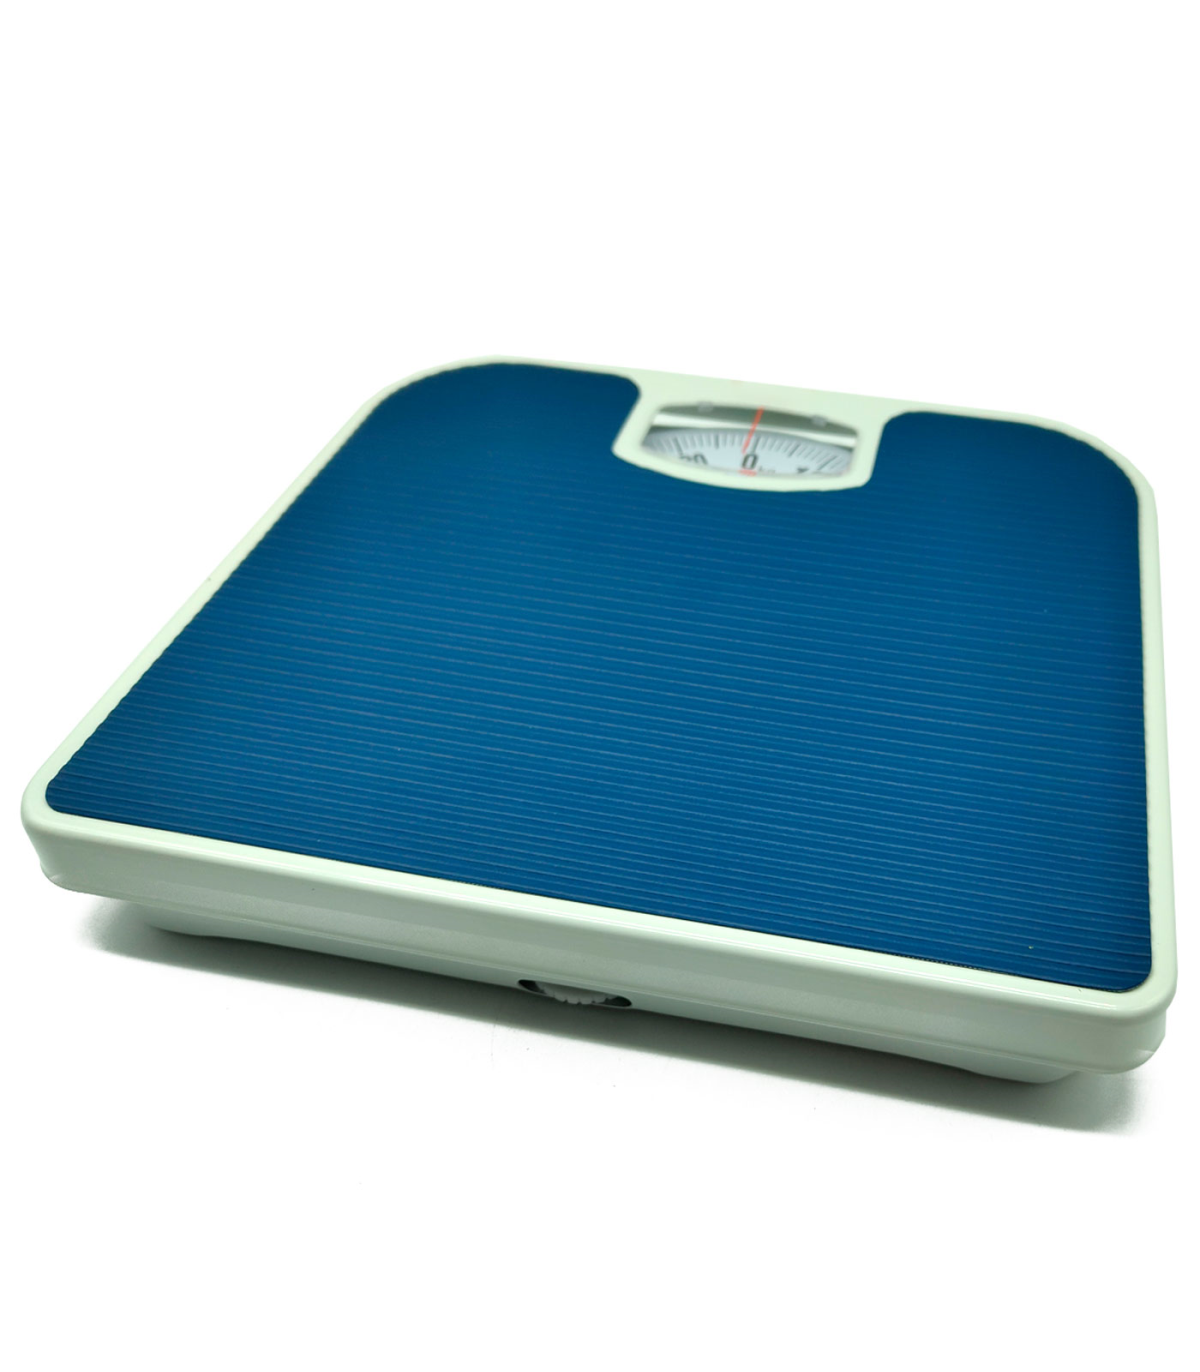 Tradineur - Bascula analógica de baño - Peso Máximo 130 kg - Bascula de uso  domestico - 4,5 x 26,5 x 24 cm - Color Surtido